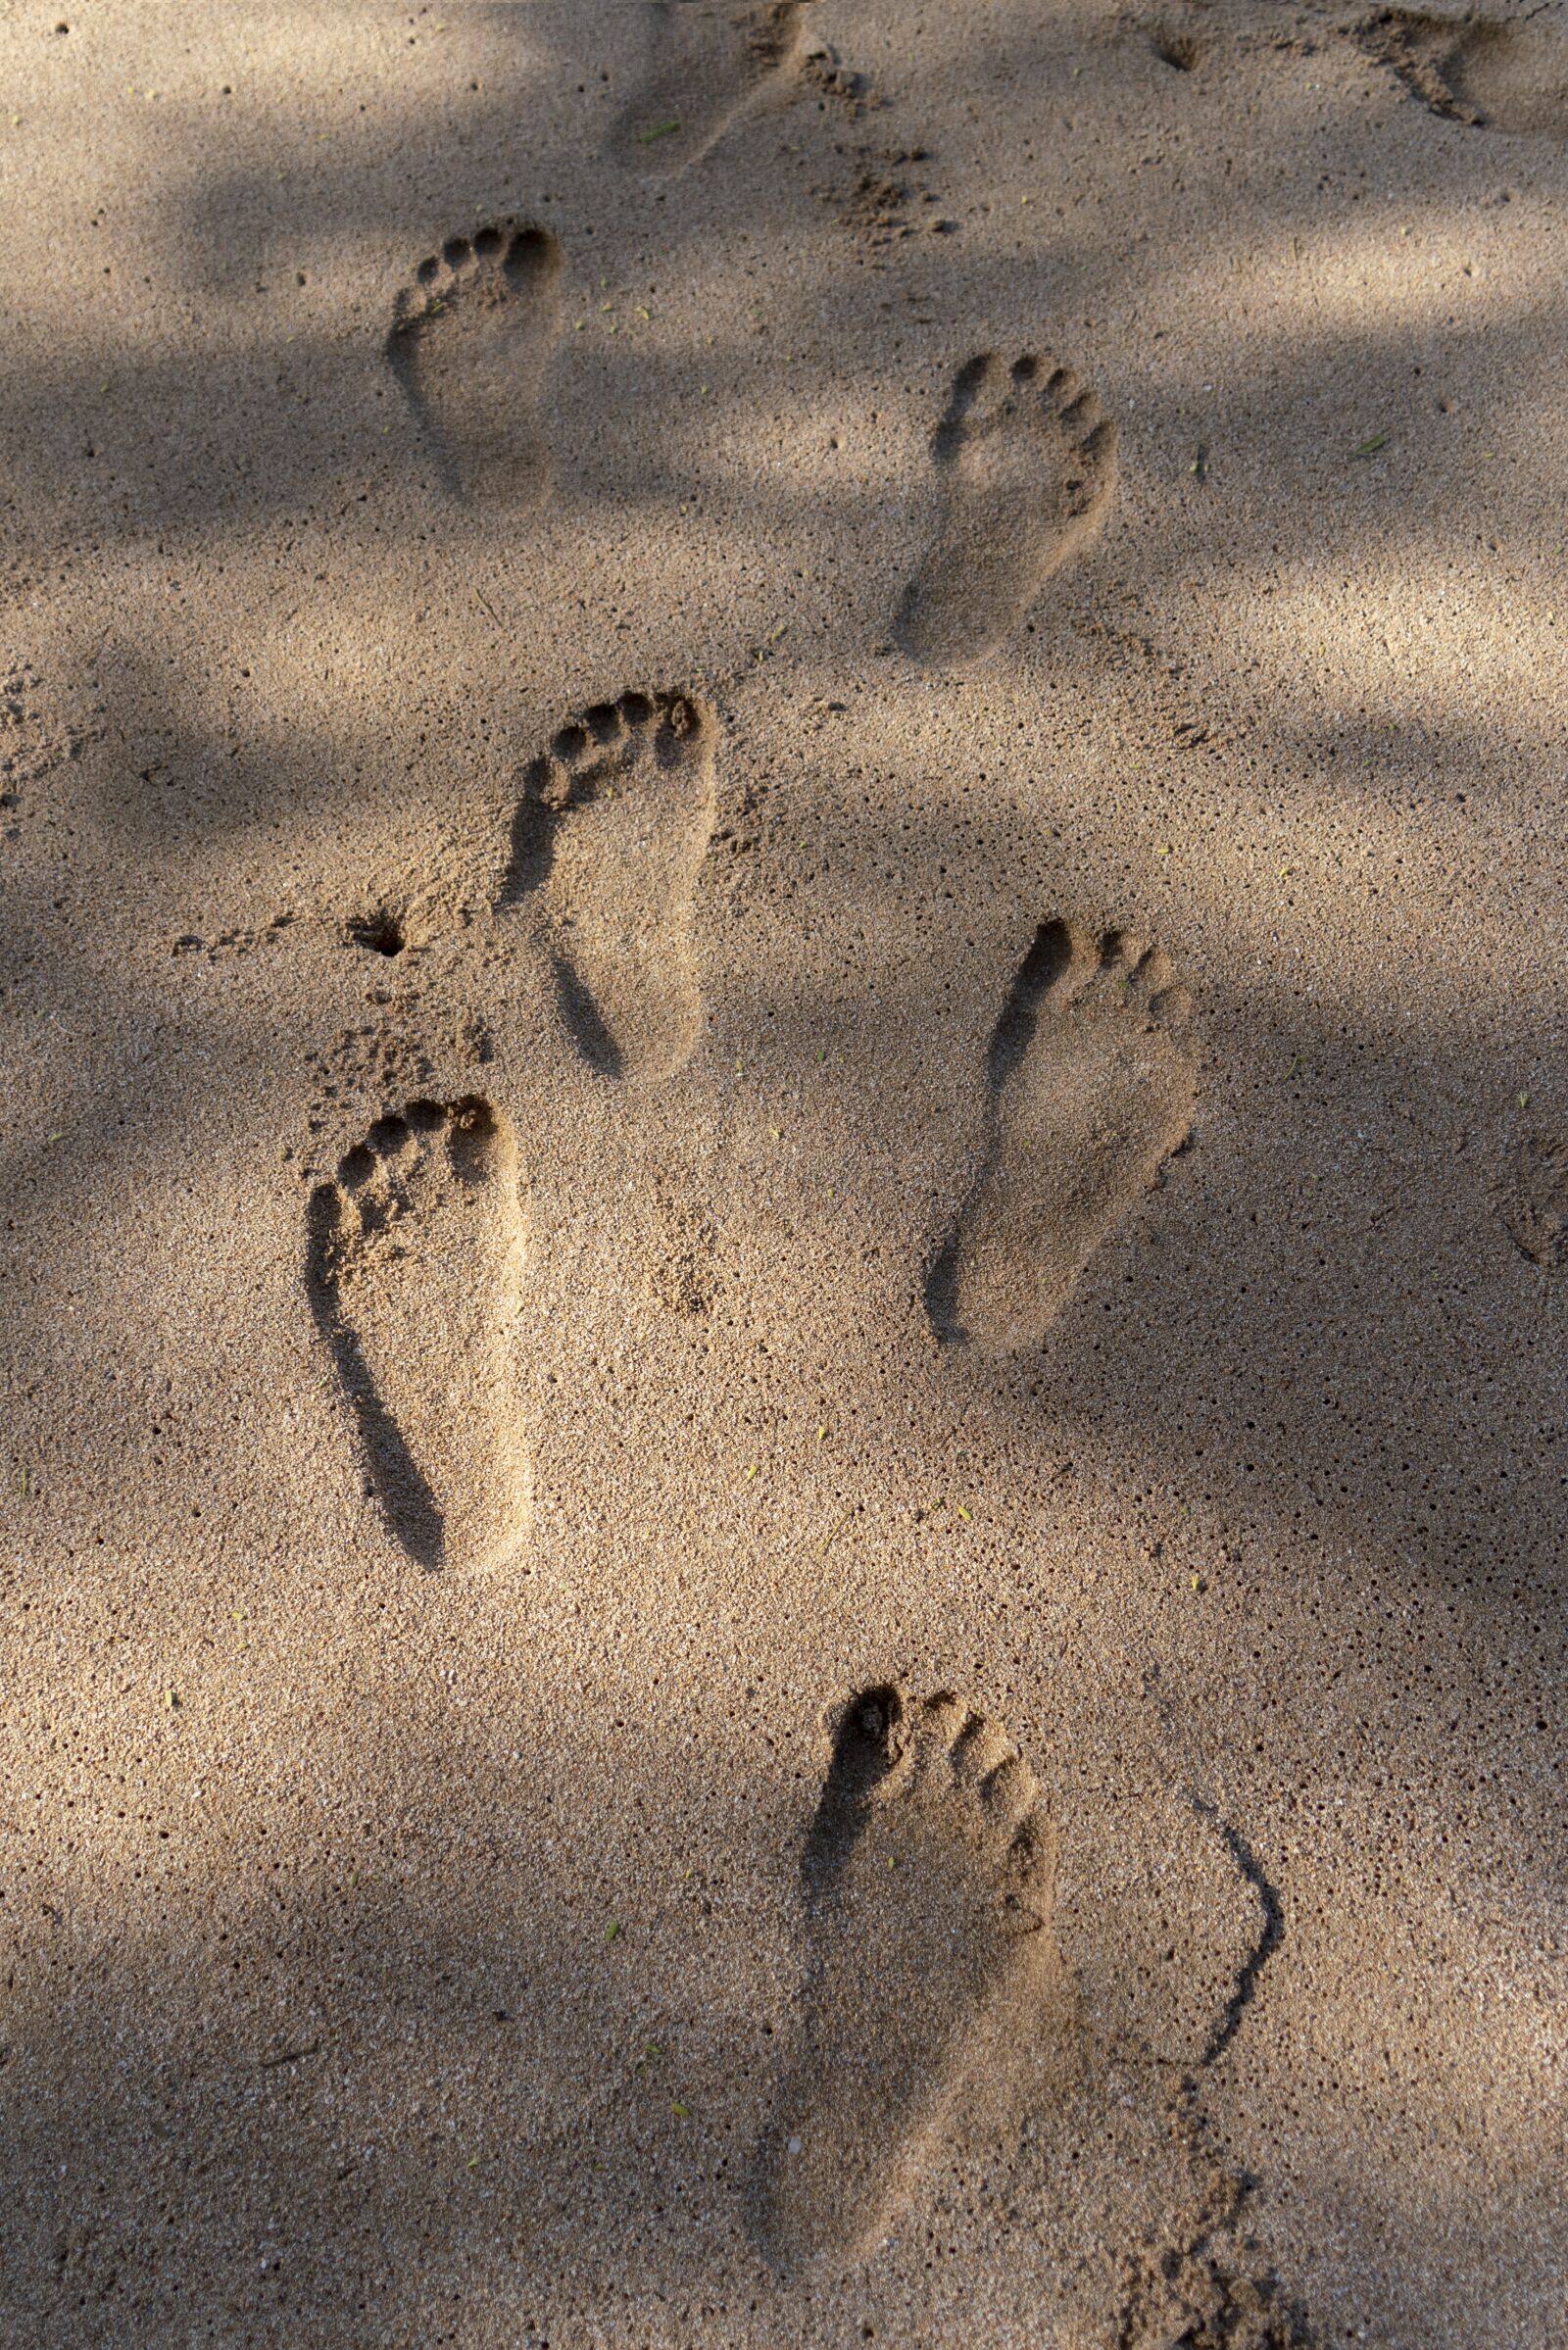 Sony a7R III + Sony FE 24-240mm F3.5-6.3 OSS sample photo. Feet, sand, footprint photography